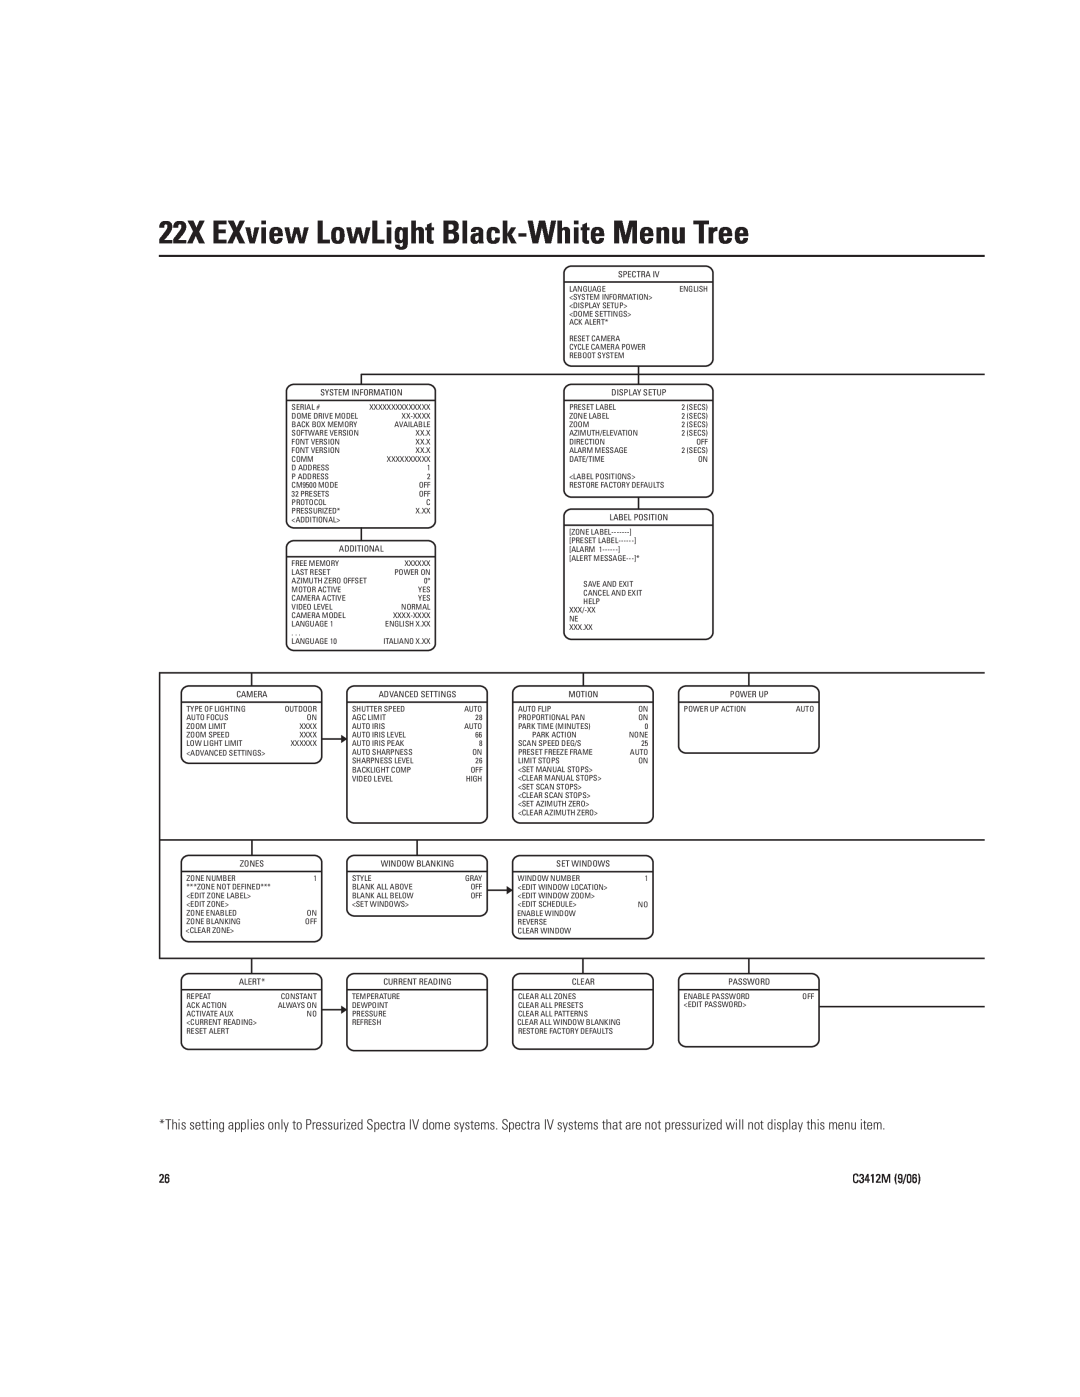 Pelco IV SE manual 22X EXview LowLight Black-WhiteMenu Tree, C3412M 9/06 